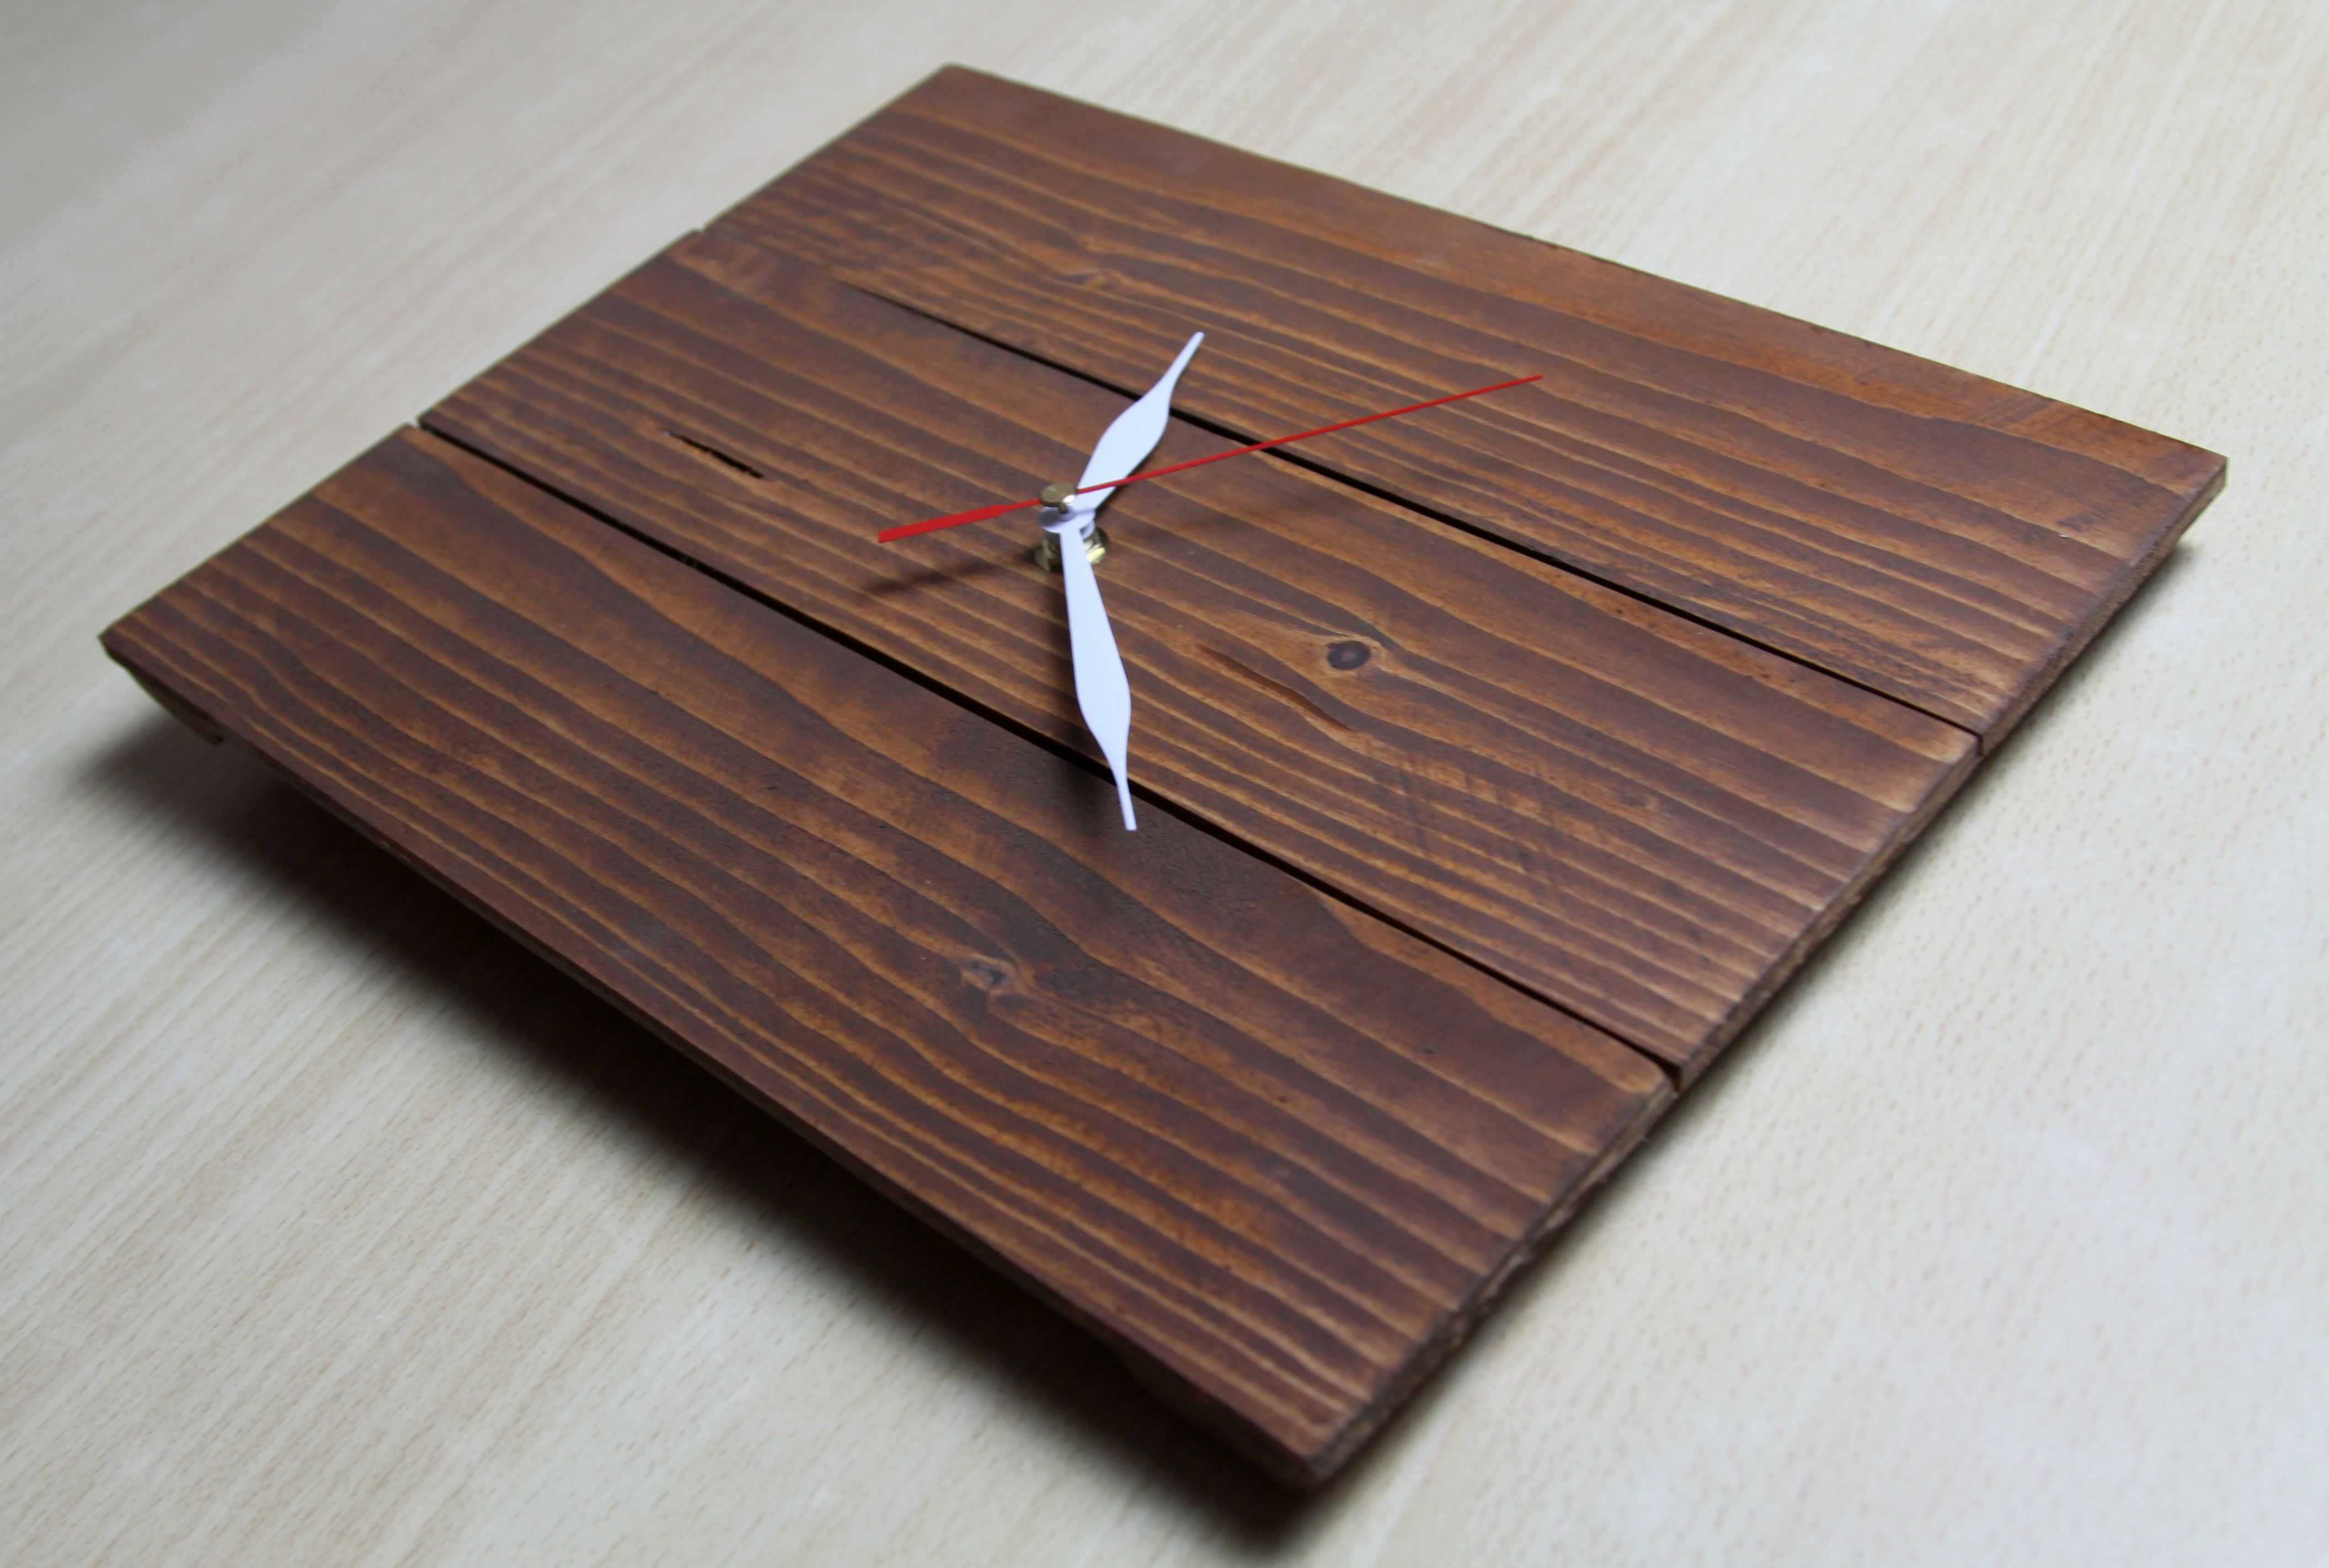 Unikatowy drewniany zegar handmade z drewna świerkowego